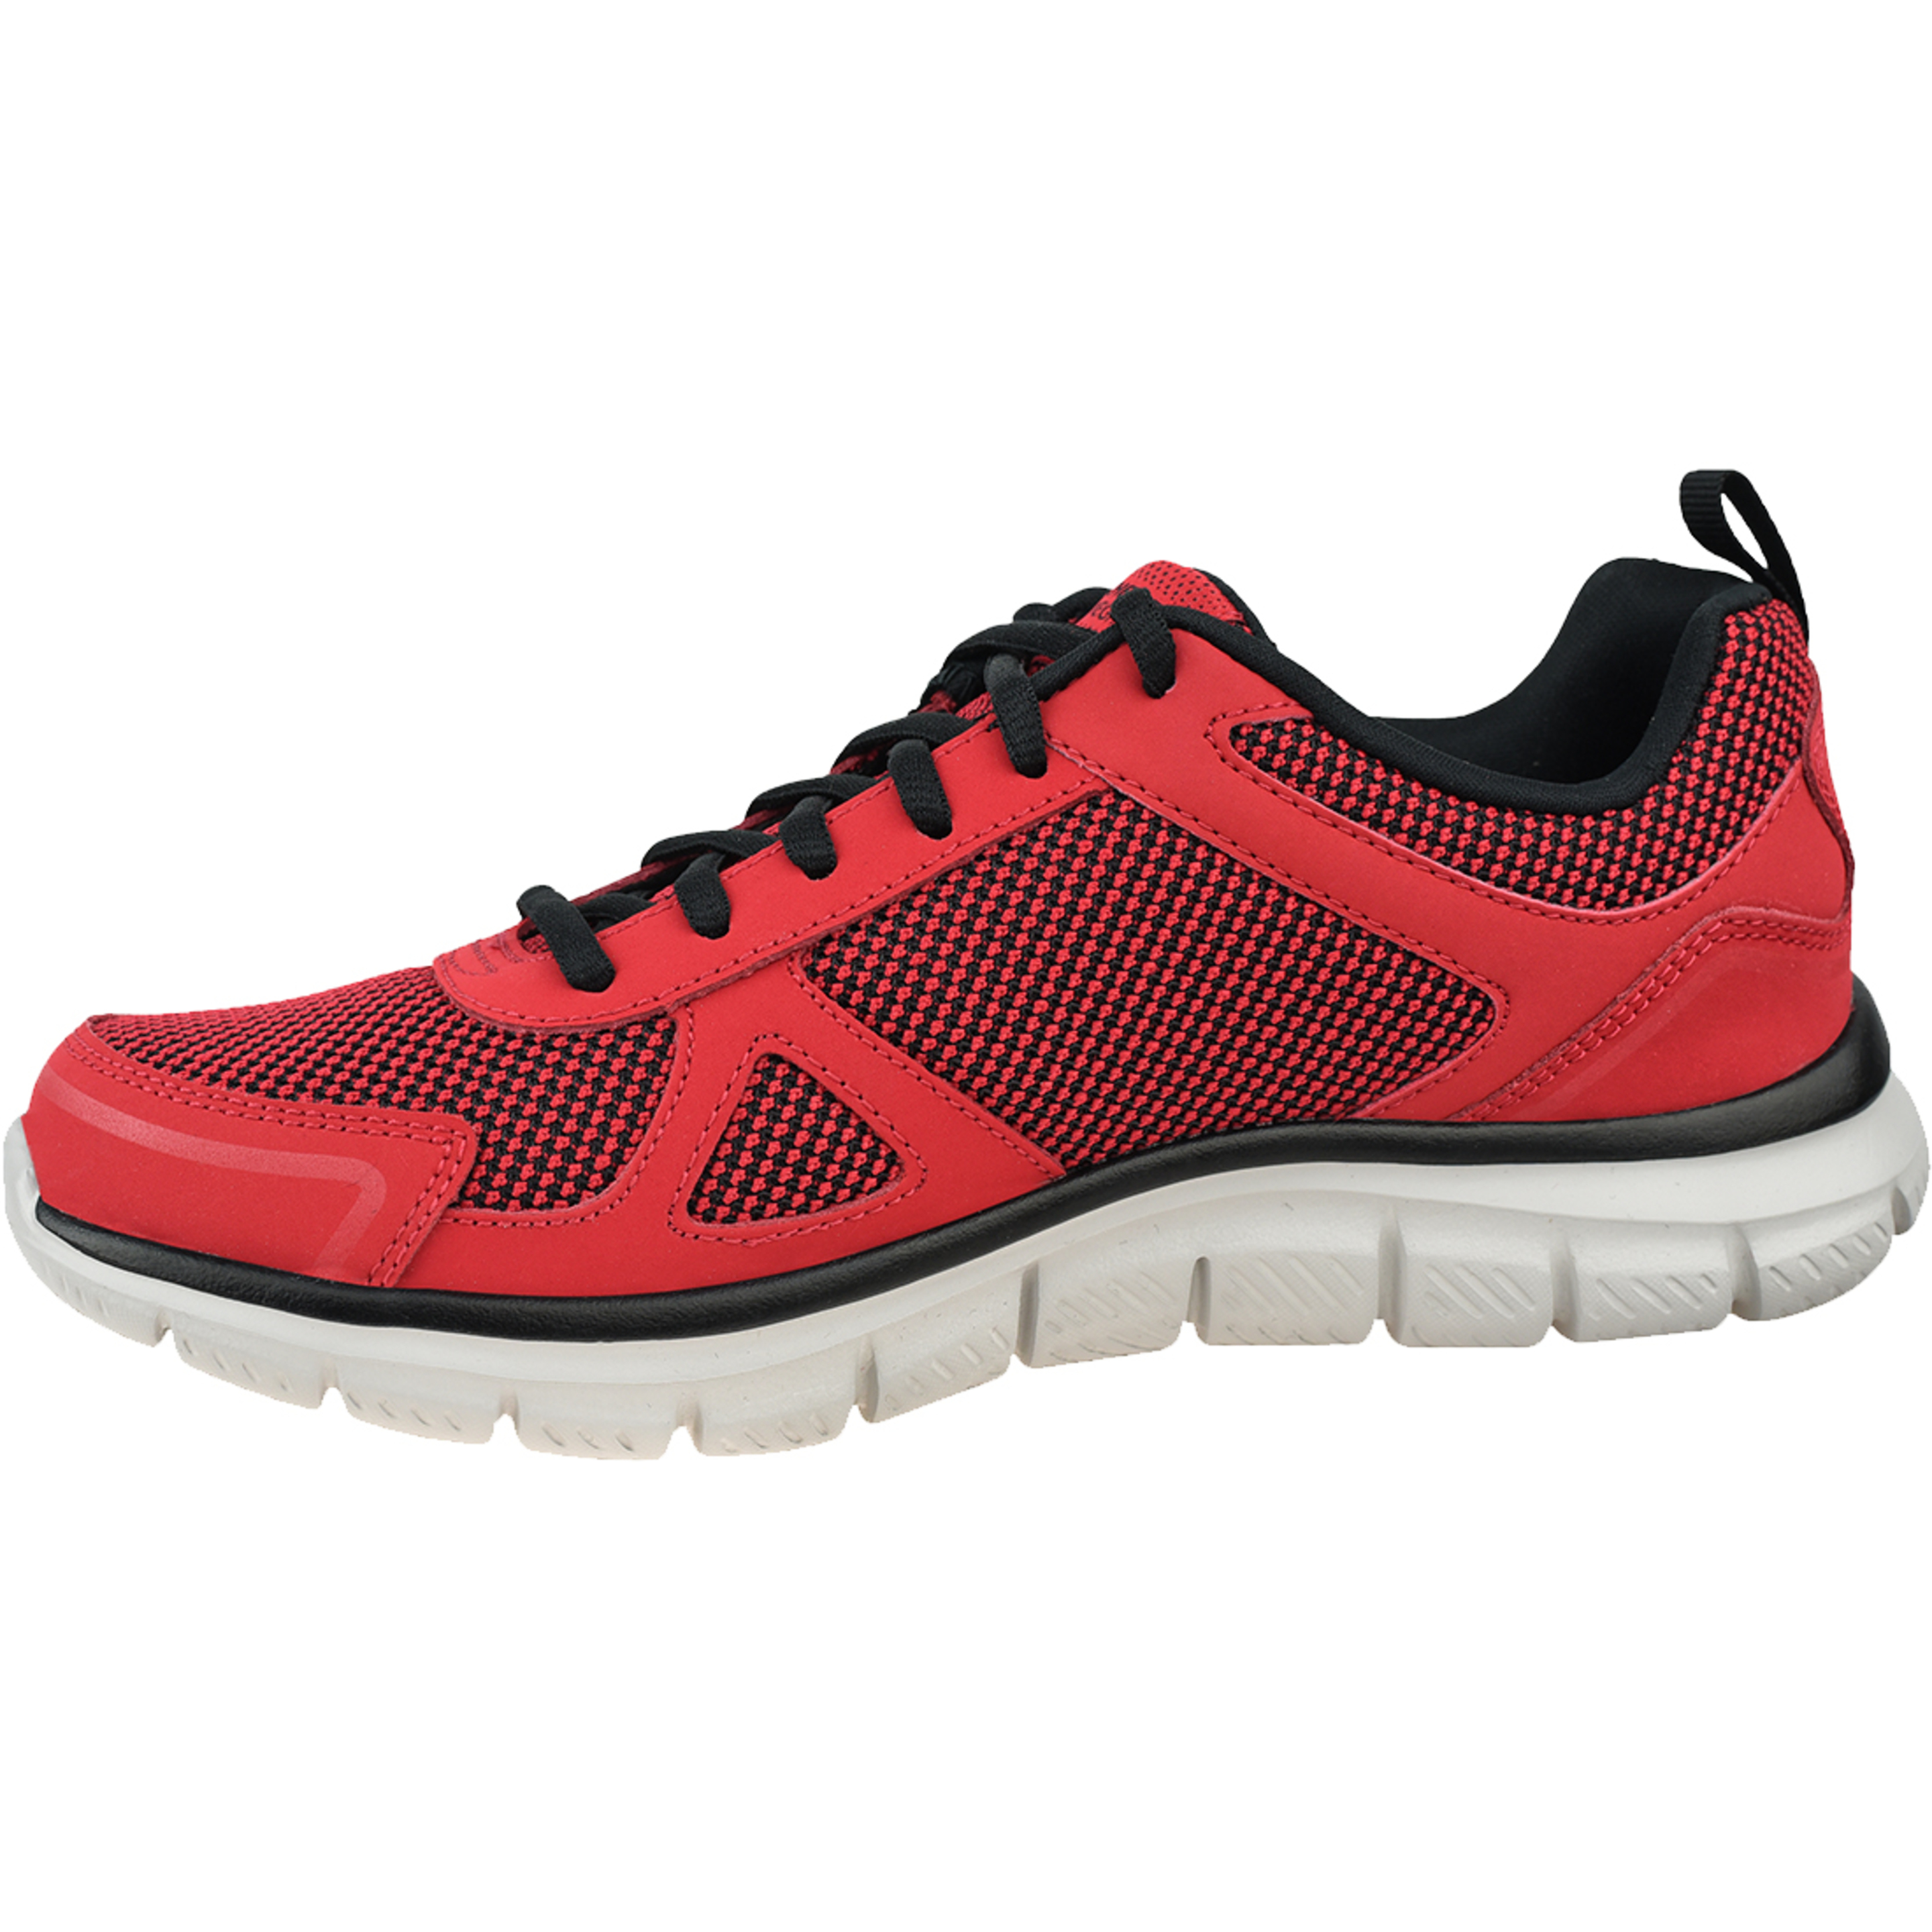 Zapatillas Skechers Track-bucolo 52630-rdbk - rojo - Zapatos De Entrenamiento  MKP